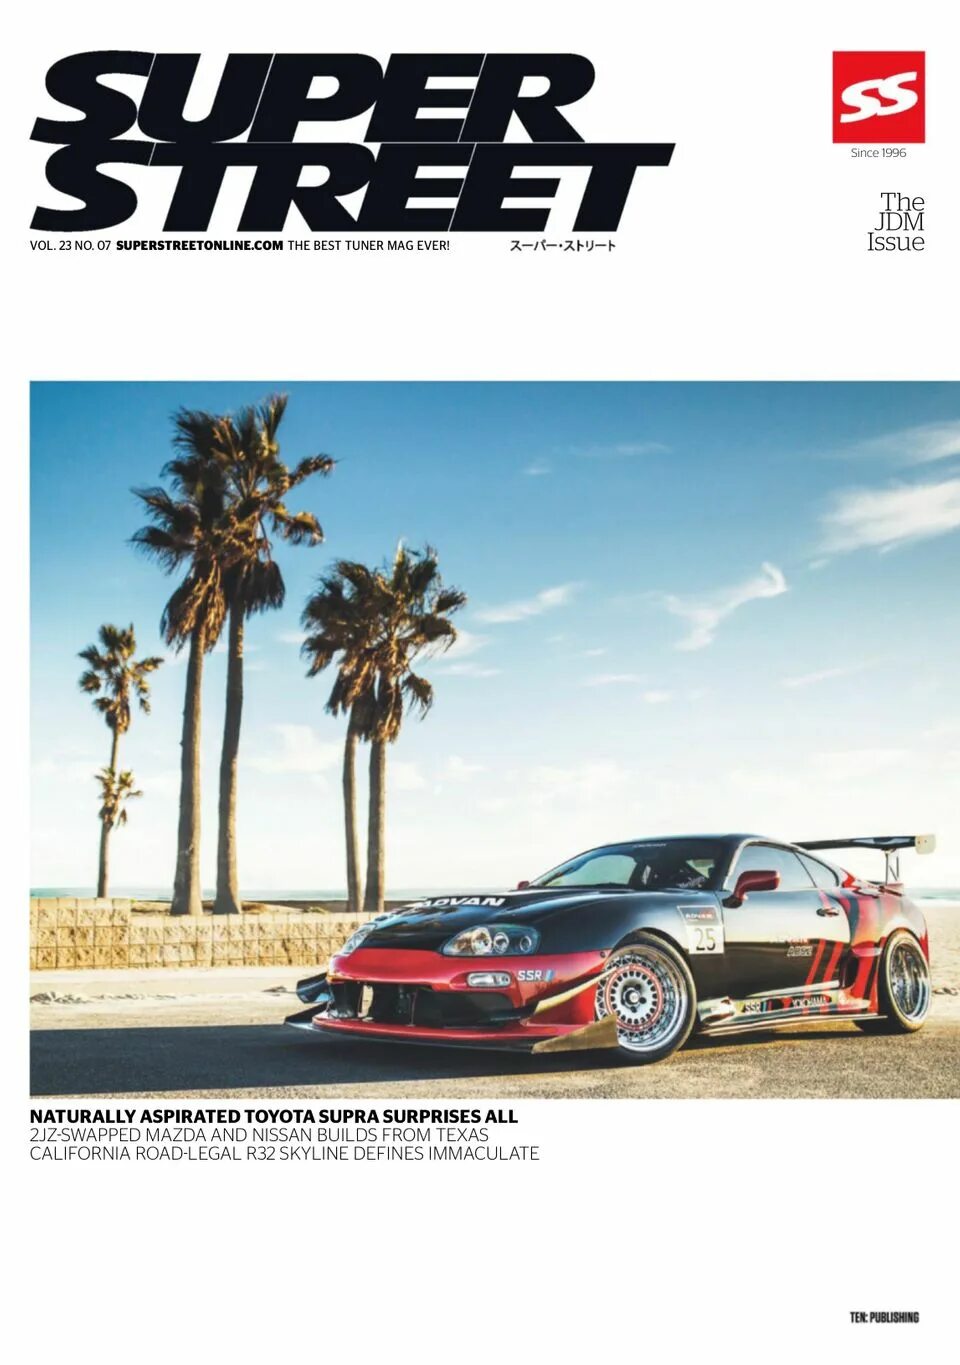 Super Street Magazine. Street Magazine. Super magazine